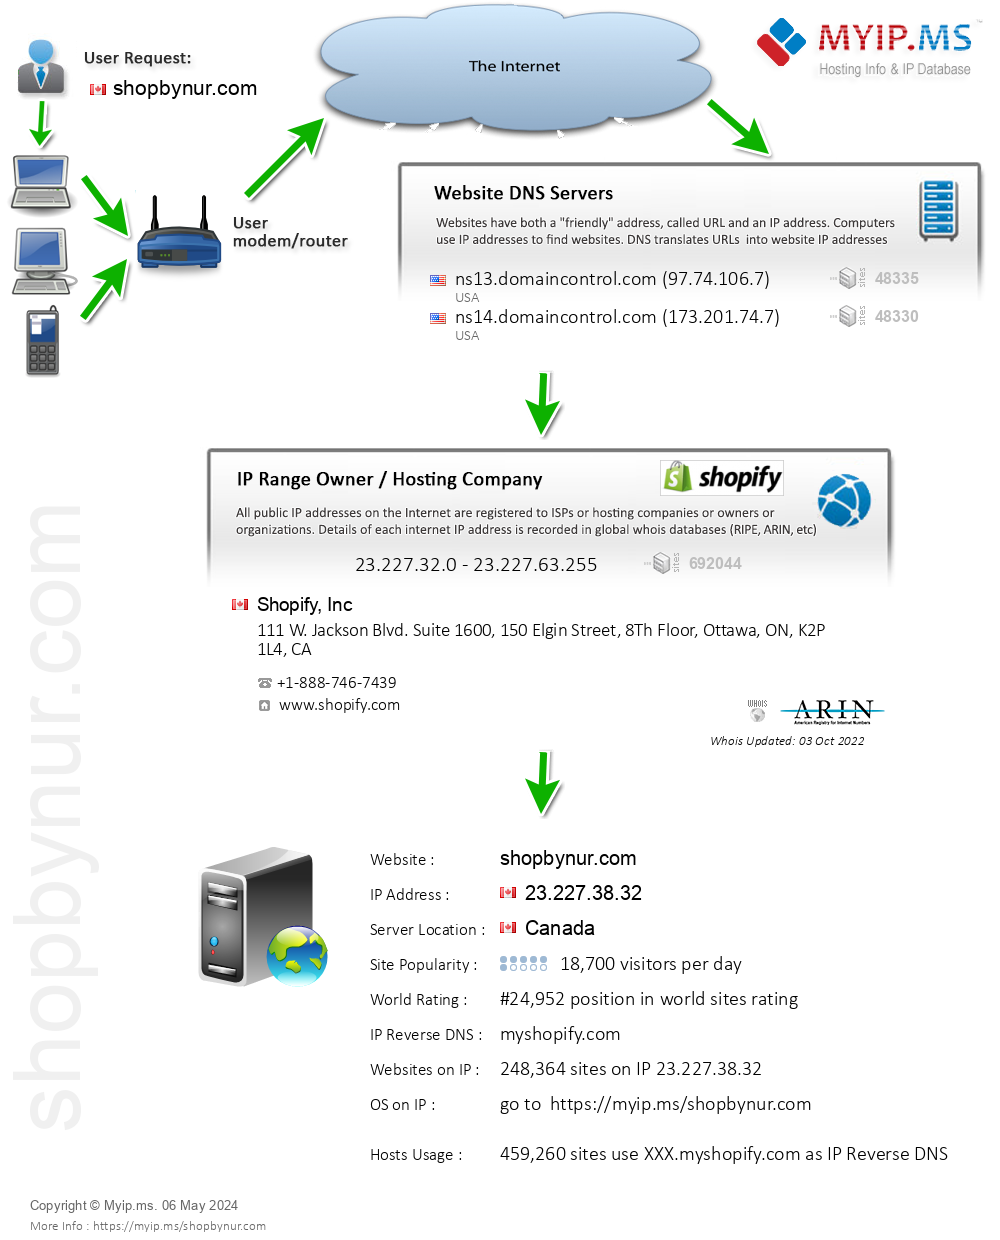 Shopbynur.com - Website Hosting Visual IP Diagram